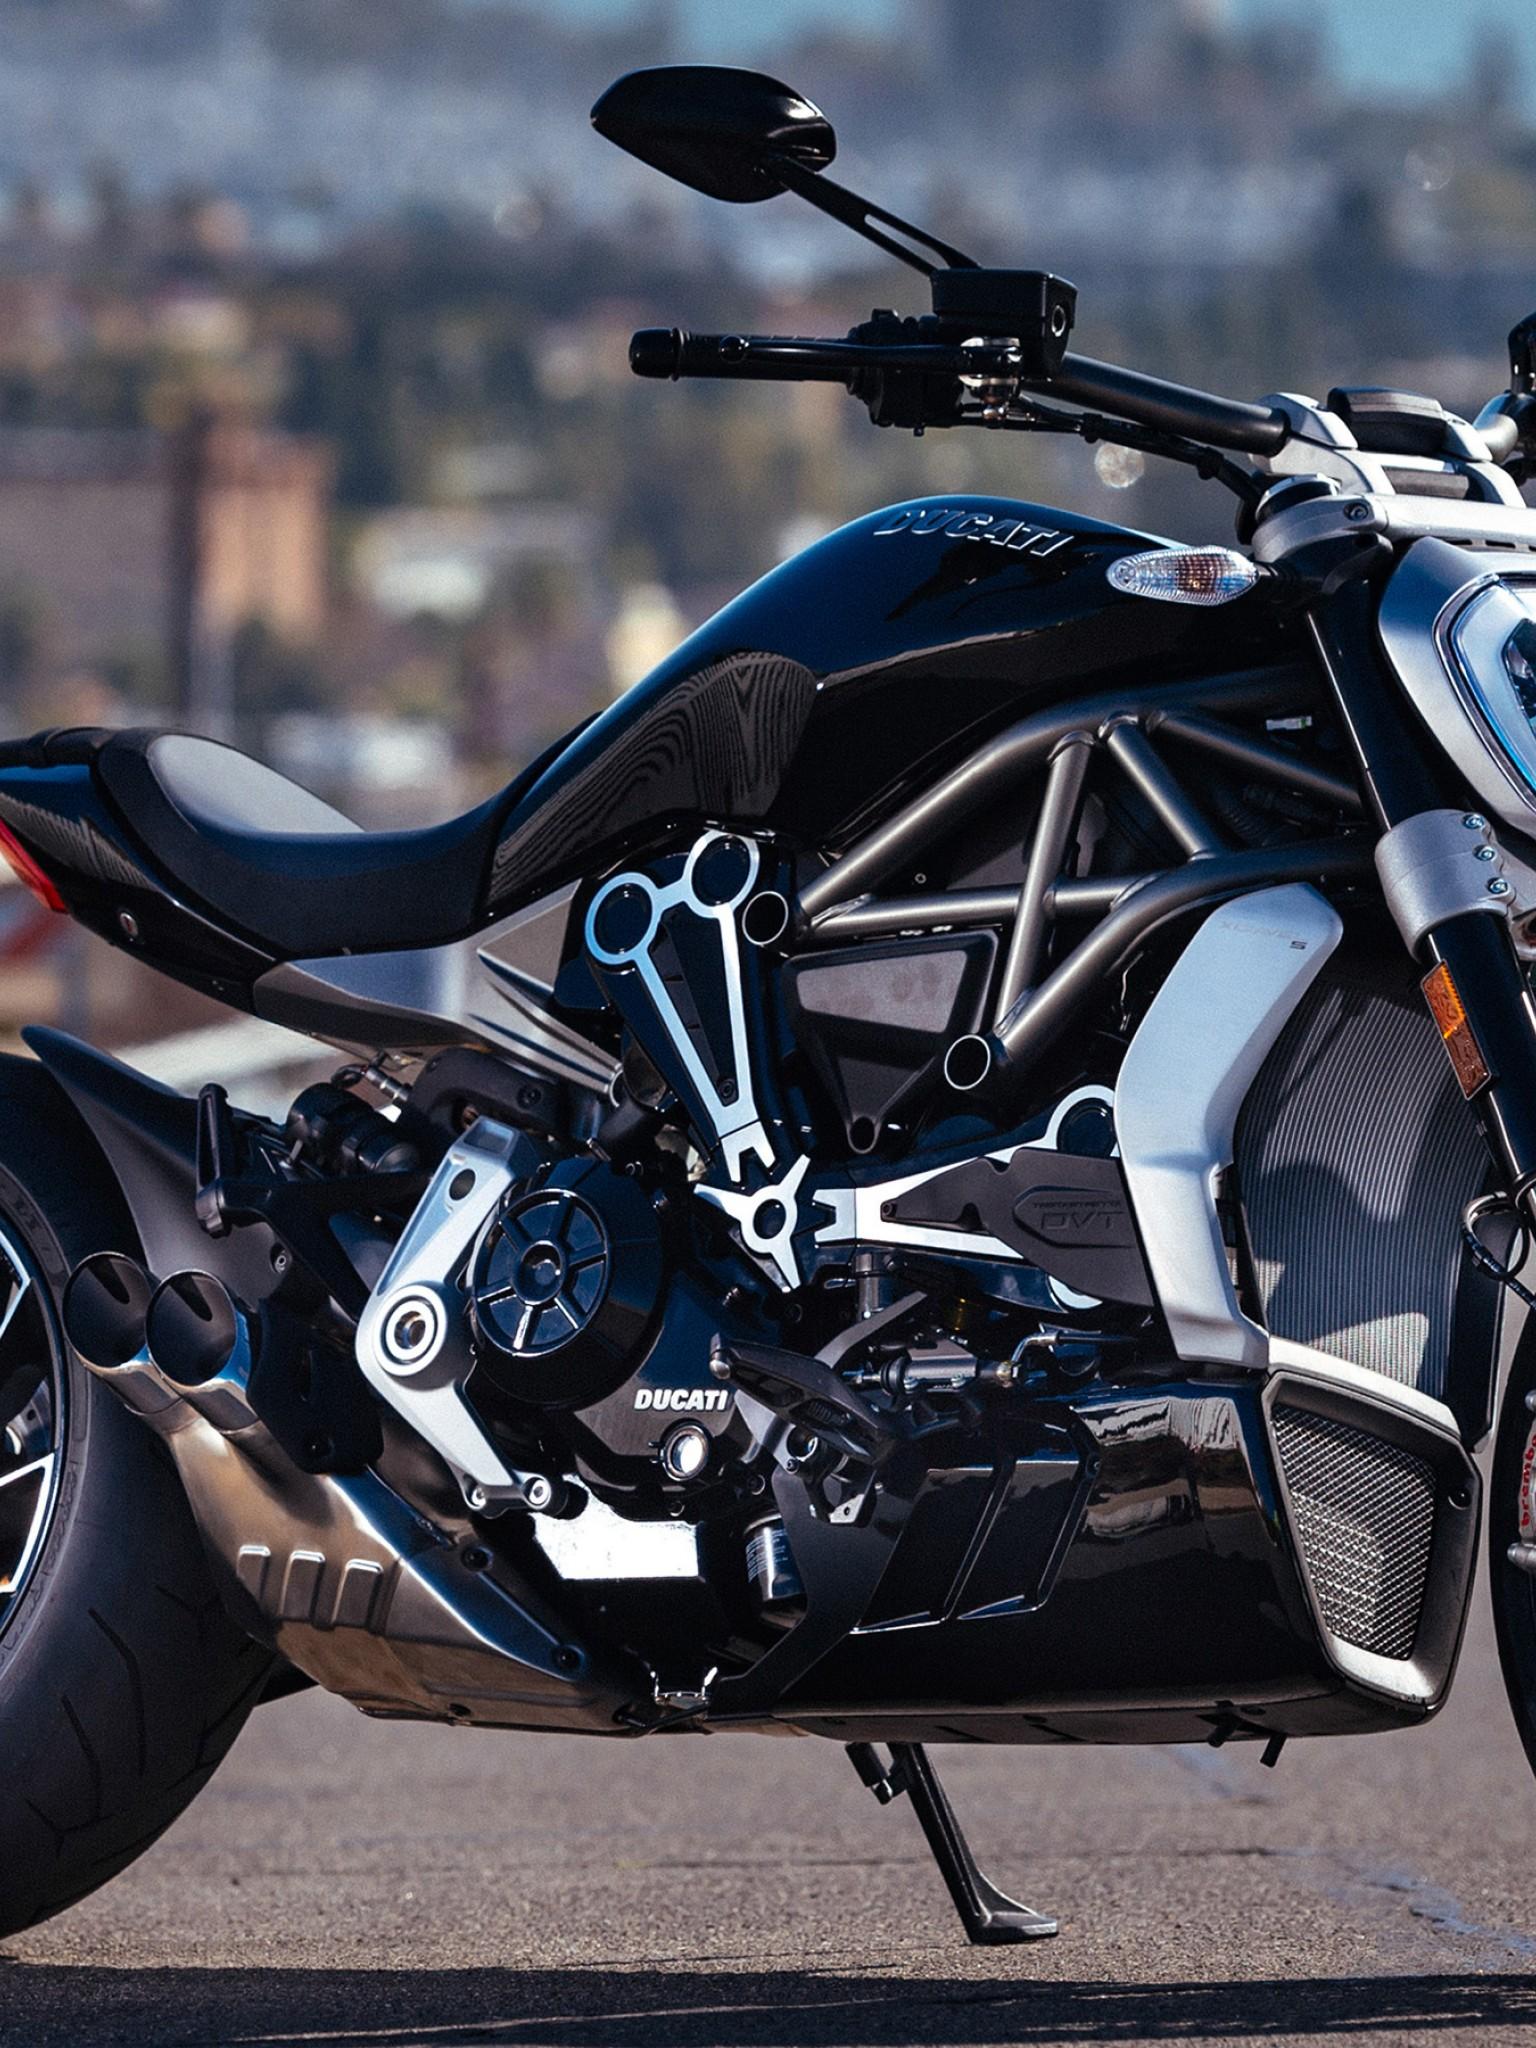 Ducati Diavel Bike HD Wallpaper for Desktop and Mobiles Retina